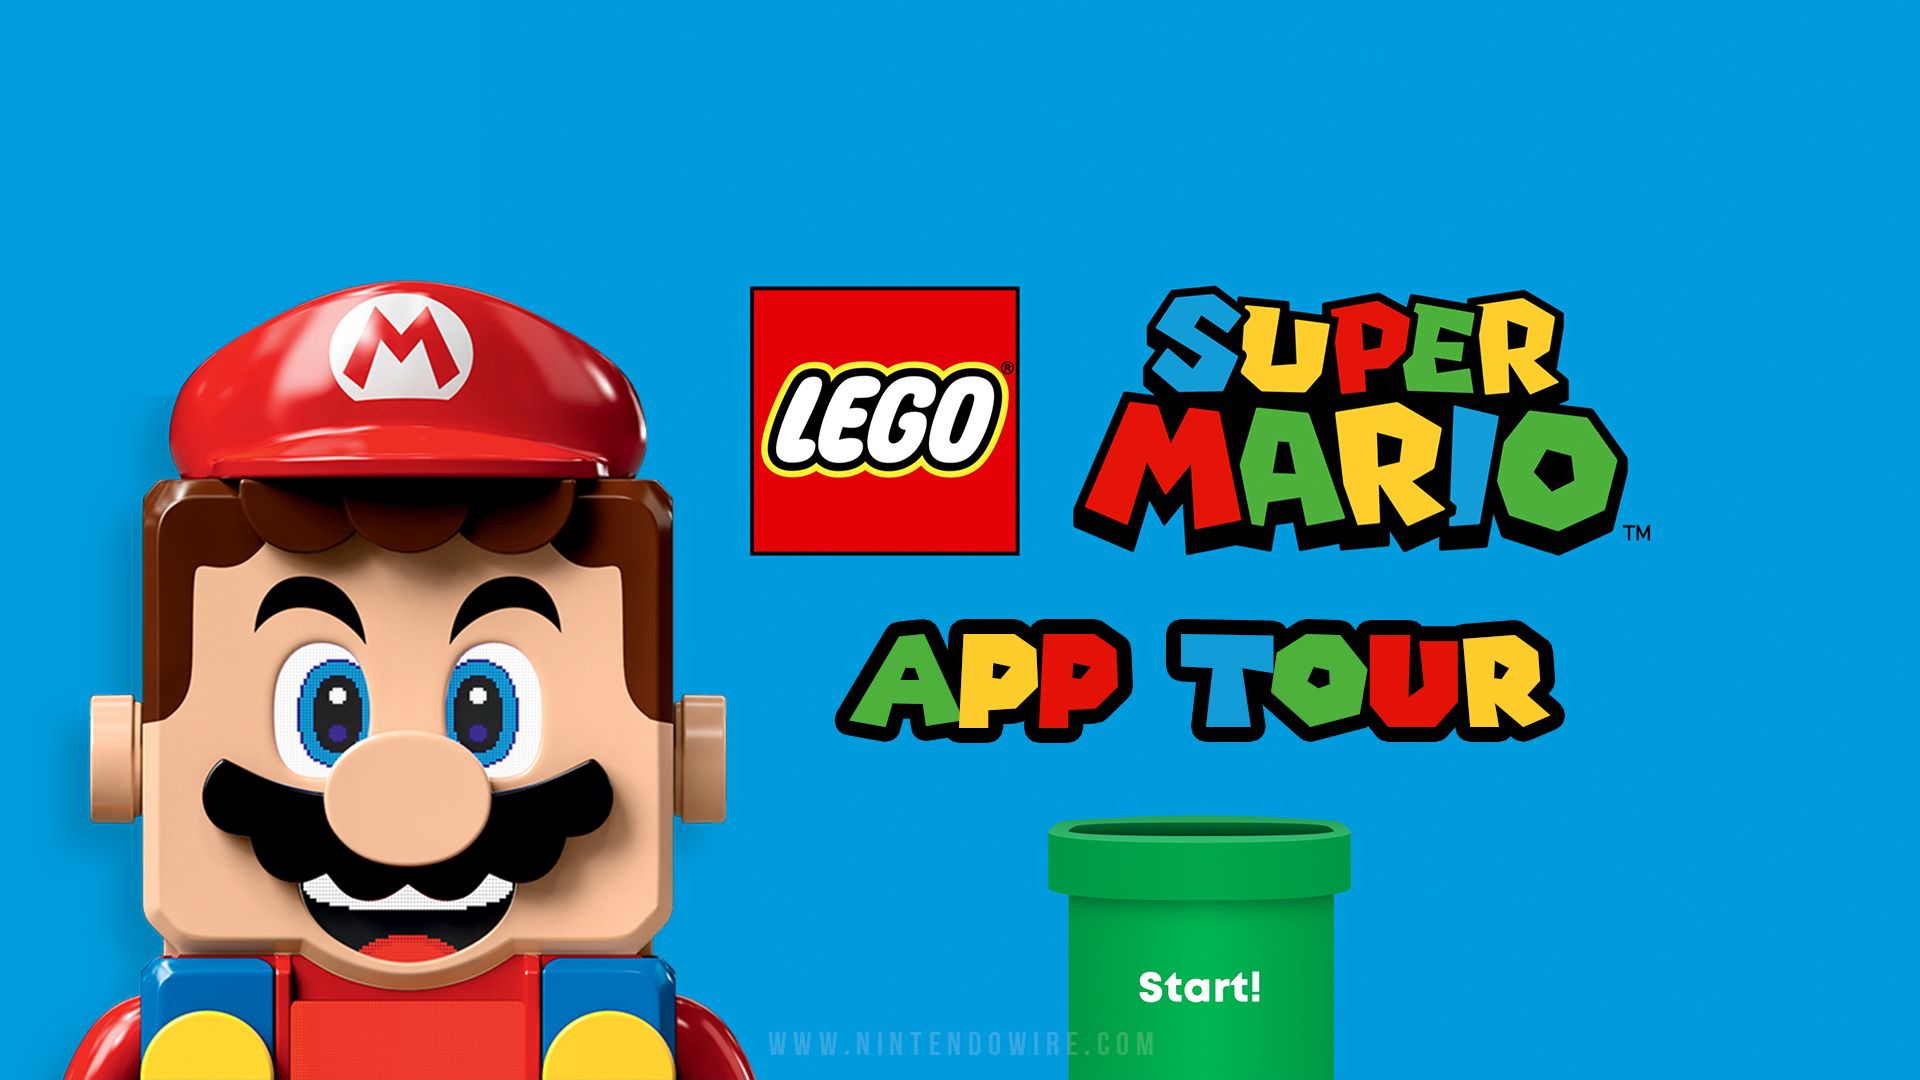 Video: LEGO Super Mario App Tour